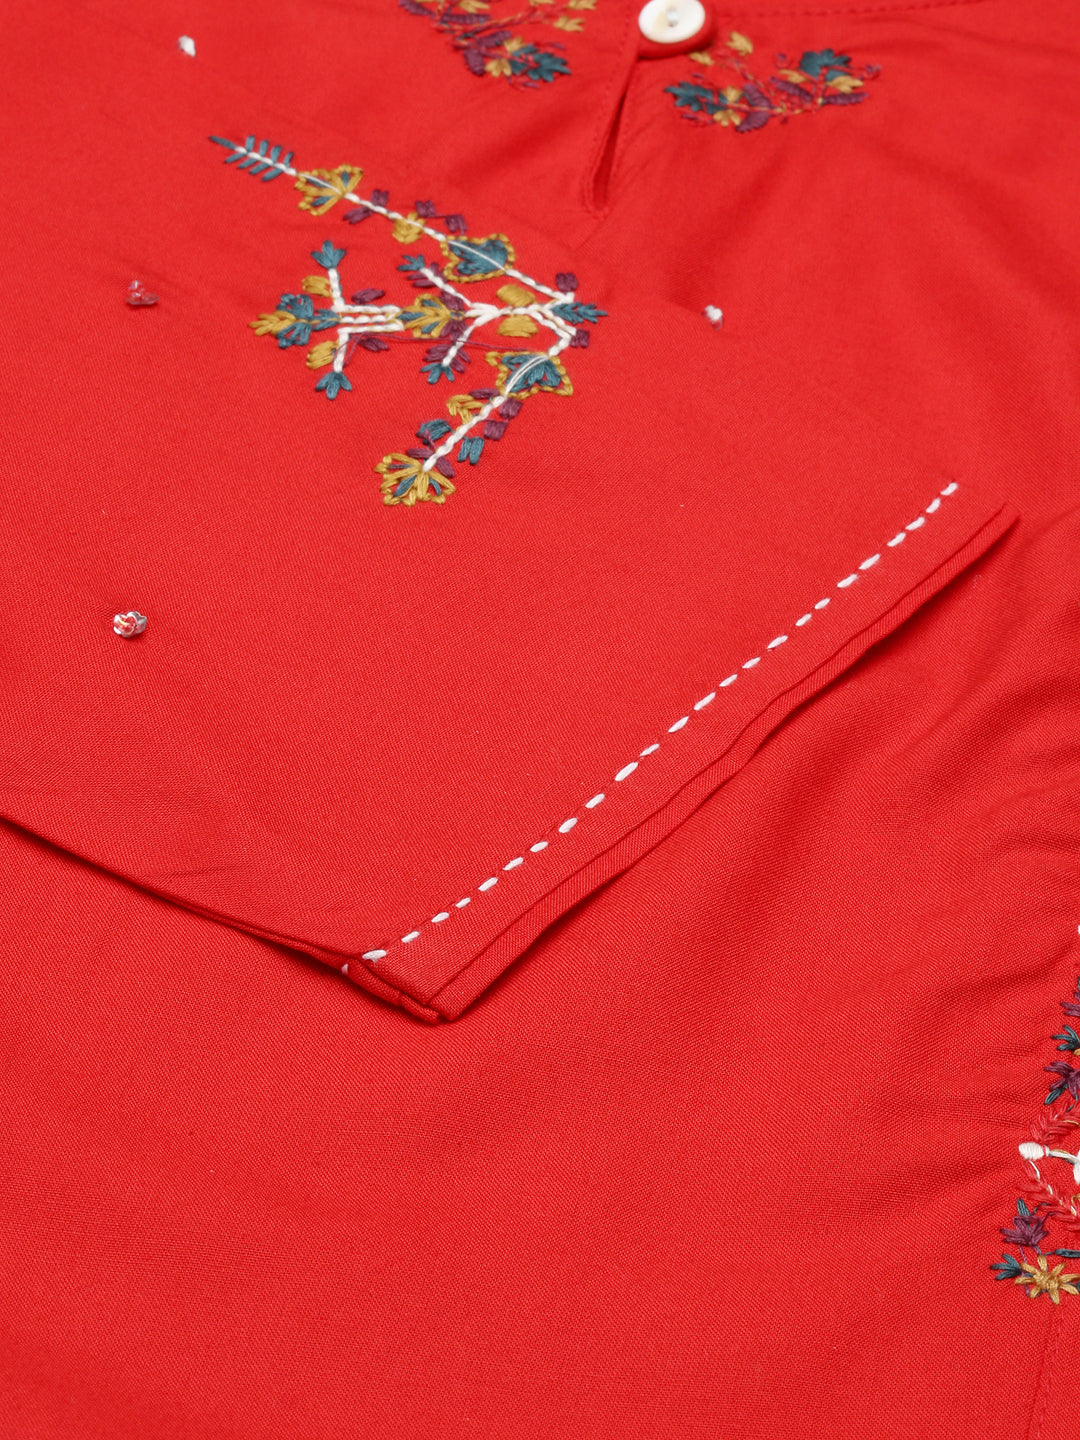 Women's Red Embroidered Straight Kurta